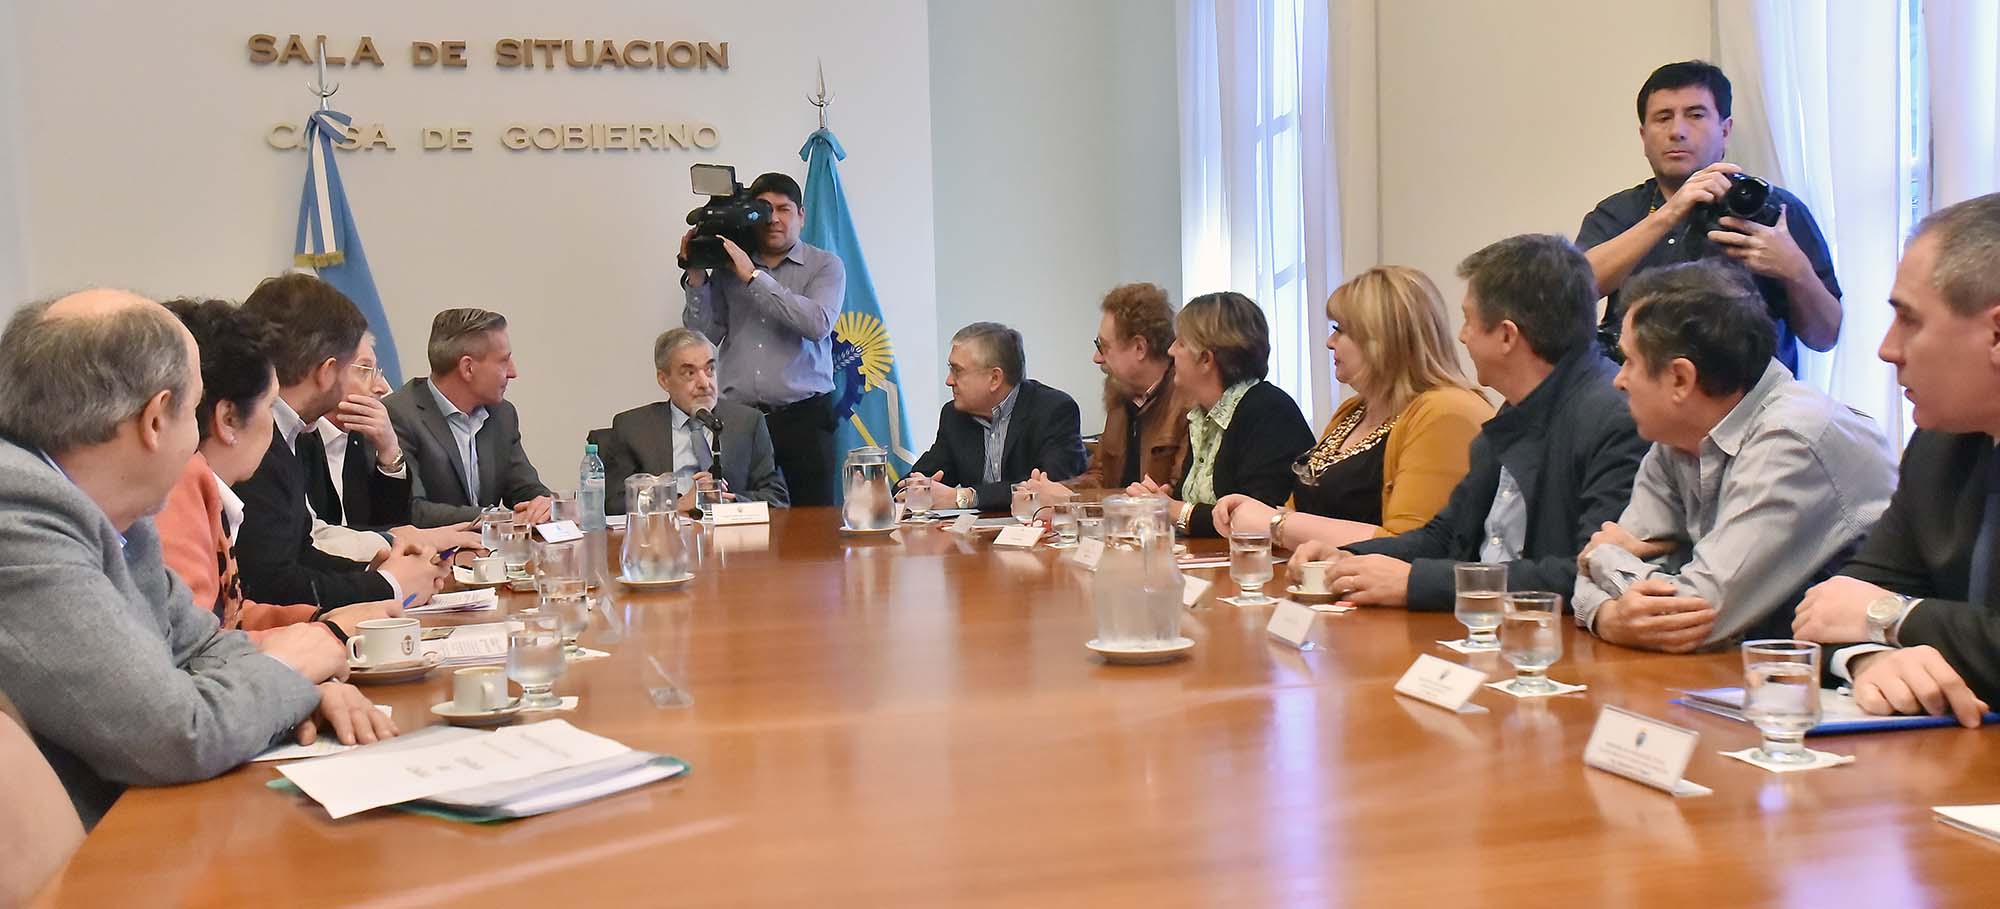 Das Neves reunió a legisladores nacionales y candidatos y advirtió que  el proyecto de presupuesto nacional “perjudica enormemente a Chubut”